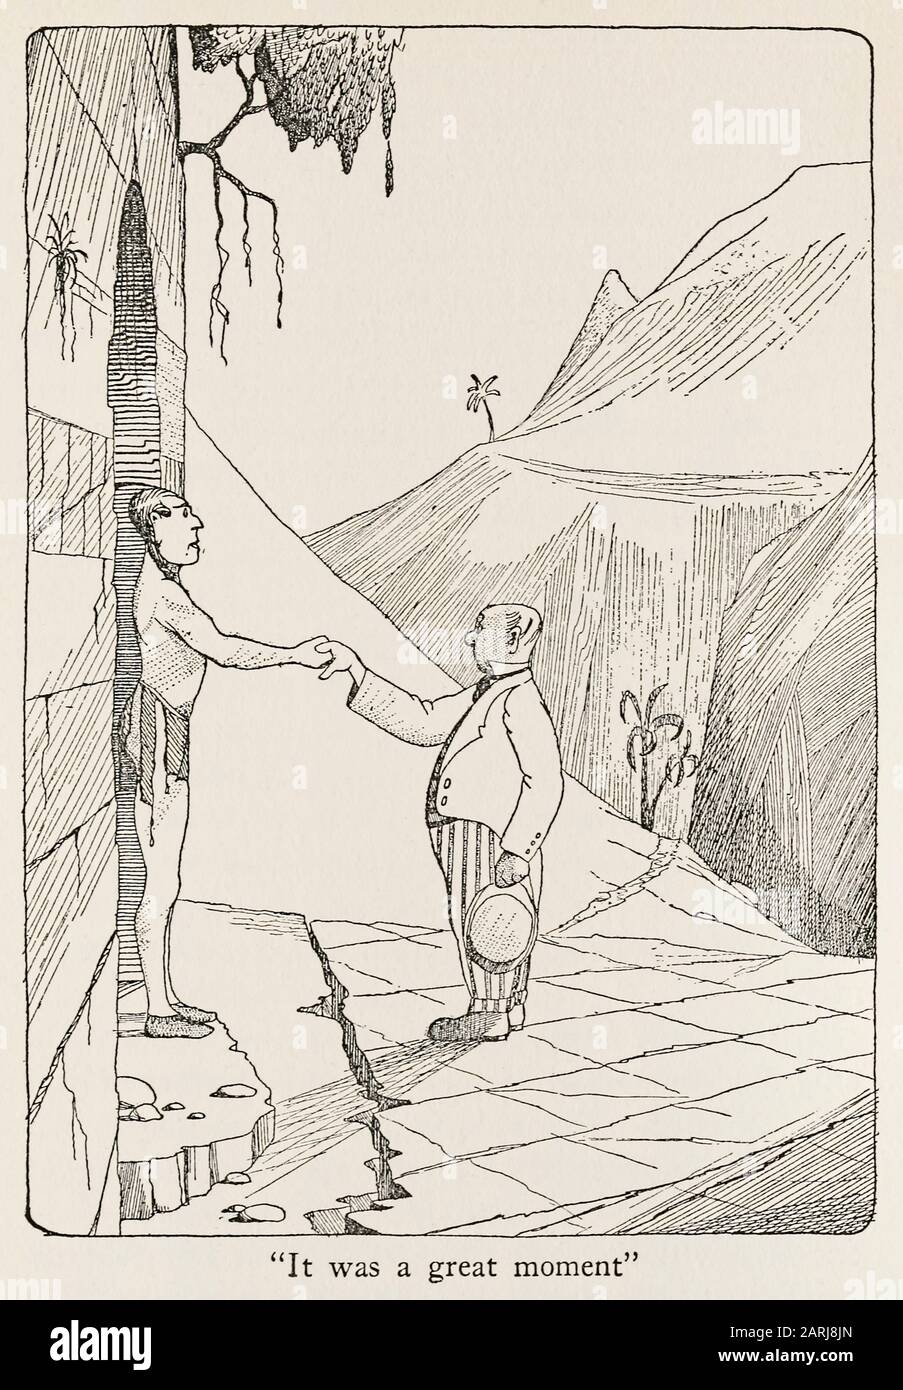 "IT was a Great Moment" Illustration from The Voyages of Doctor Dolittle (1922) geschrieben und illustriert von Hugh Lofting (1886-1947). Der zweite Roman über einen Arzt, der mit Tieren sprechen kann. Weitere Informationen finden Sie weiter unten. Stockfoto